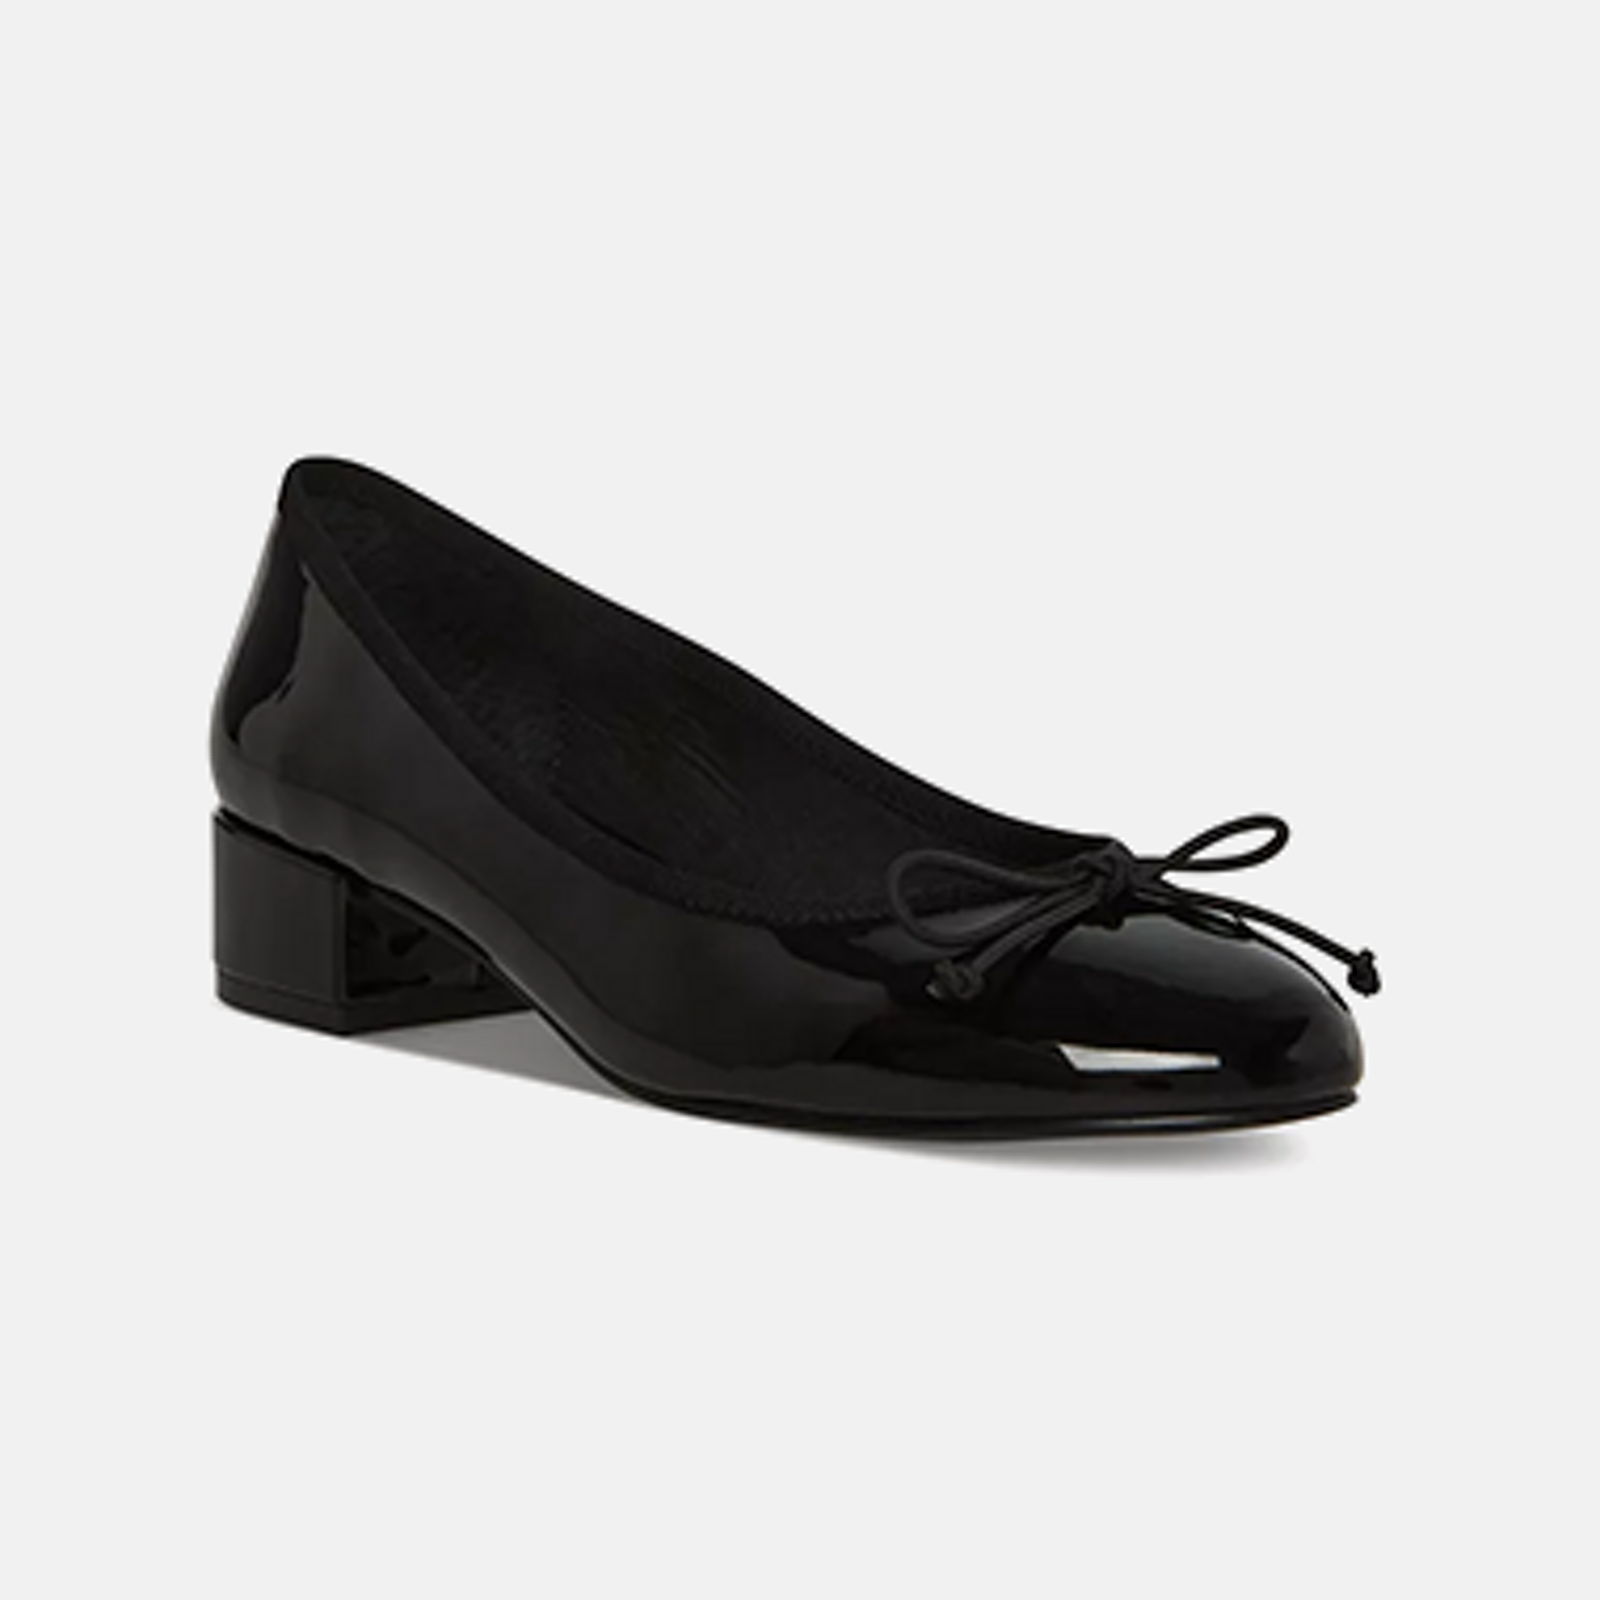 GC Shoes Monica Black 6 Embellished Comfort Slide Wedge Sandals